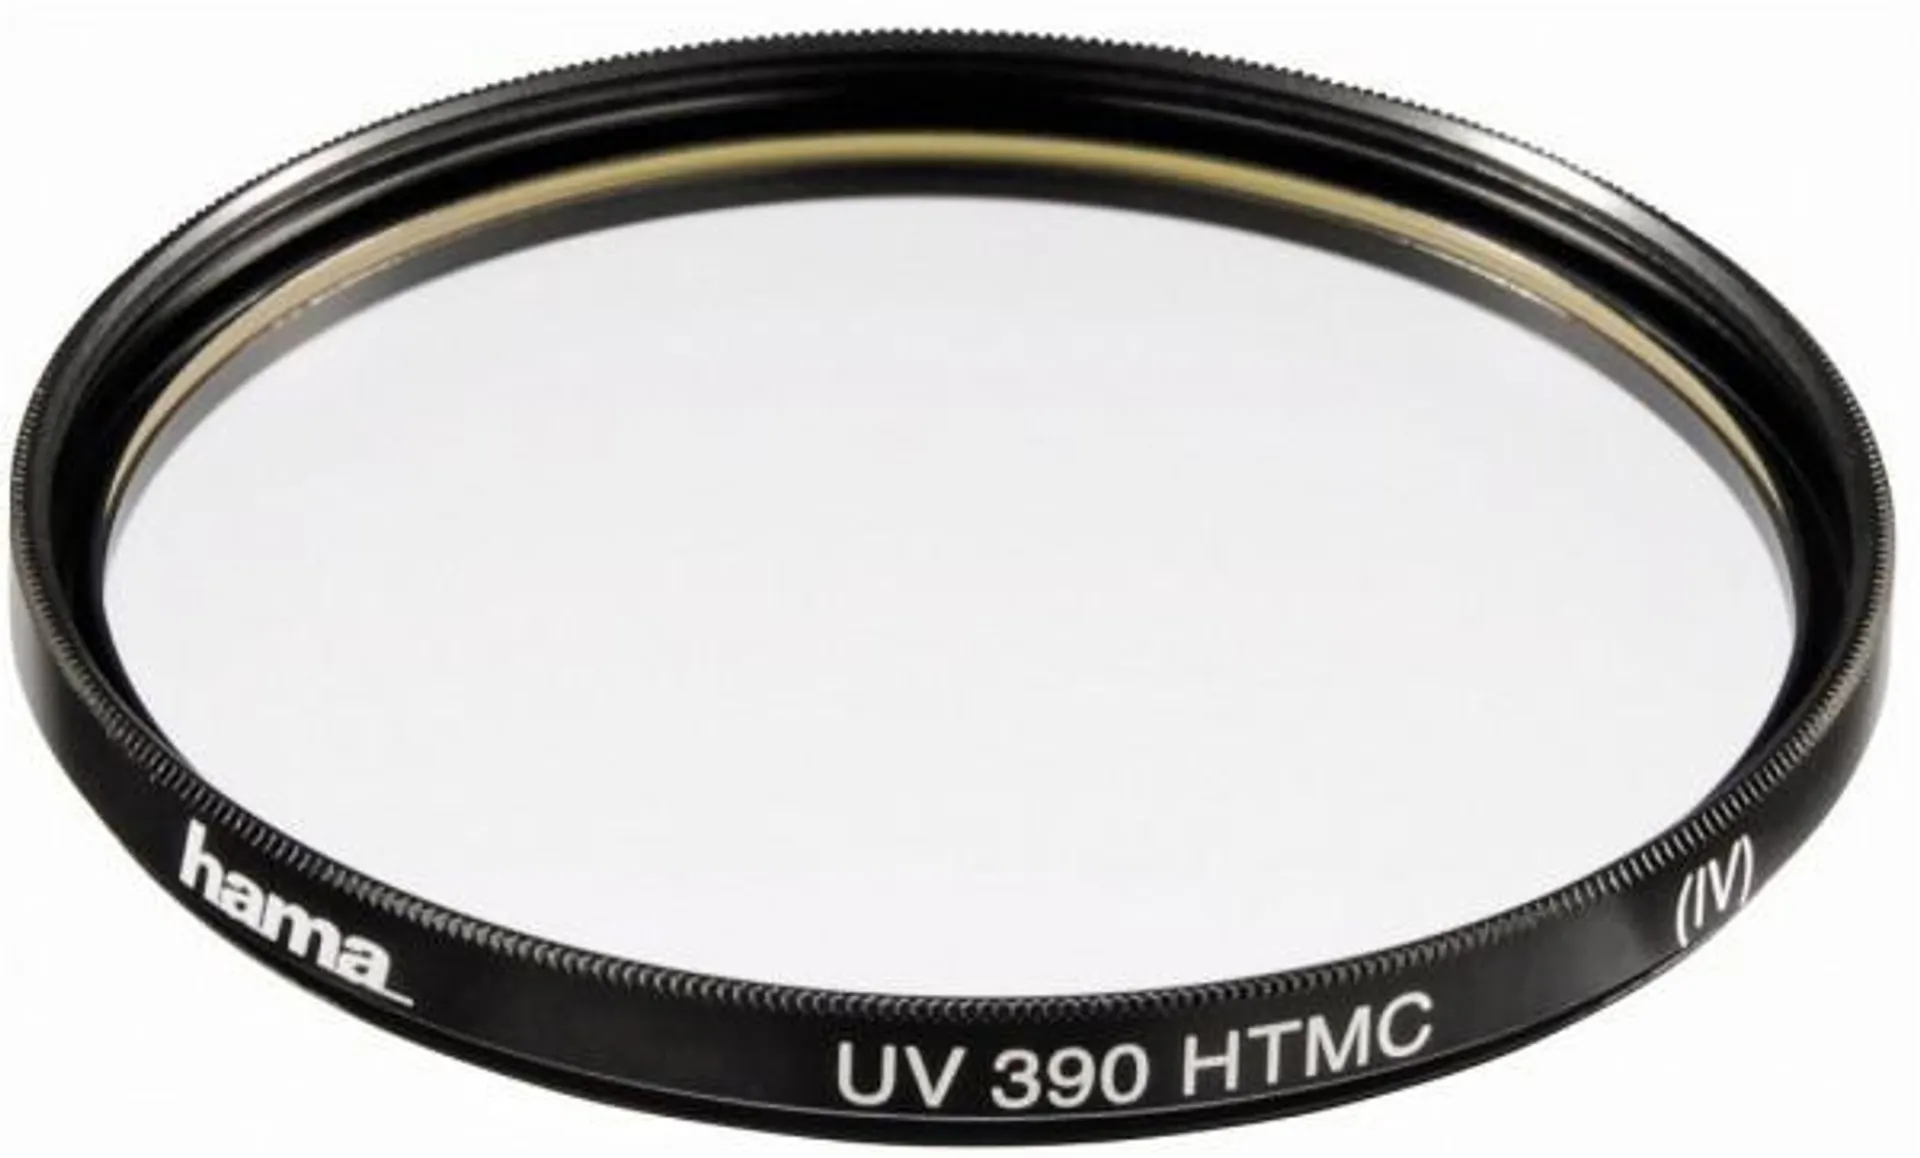 Hama UV 390, HTMC-vergütet, 72mm Filter